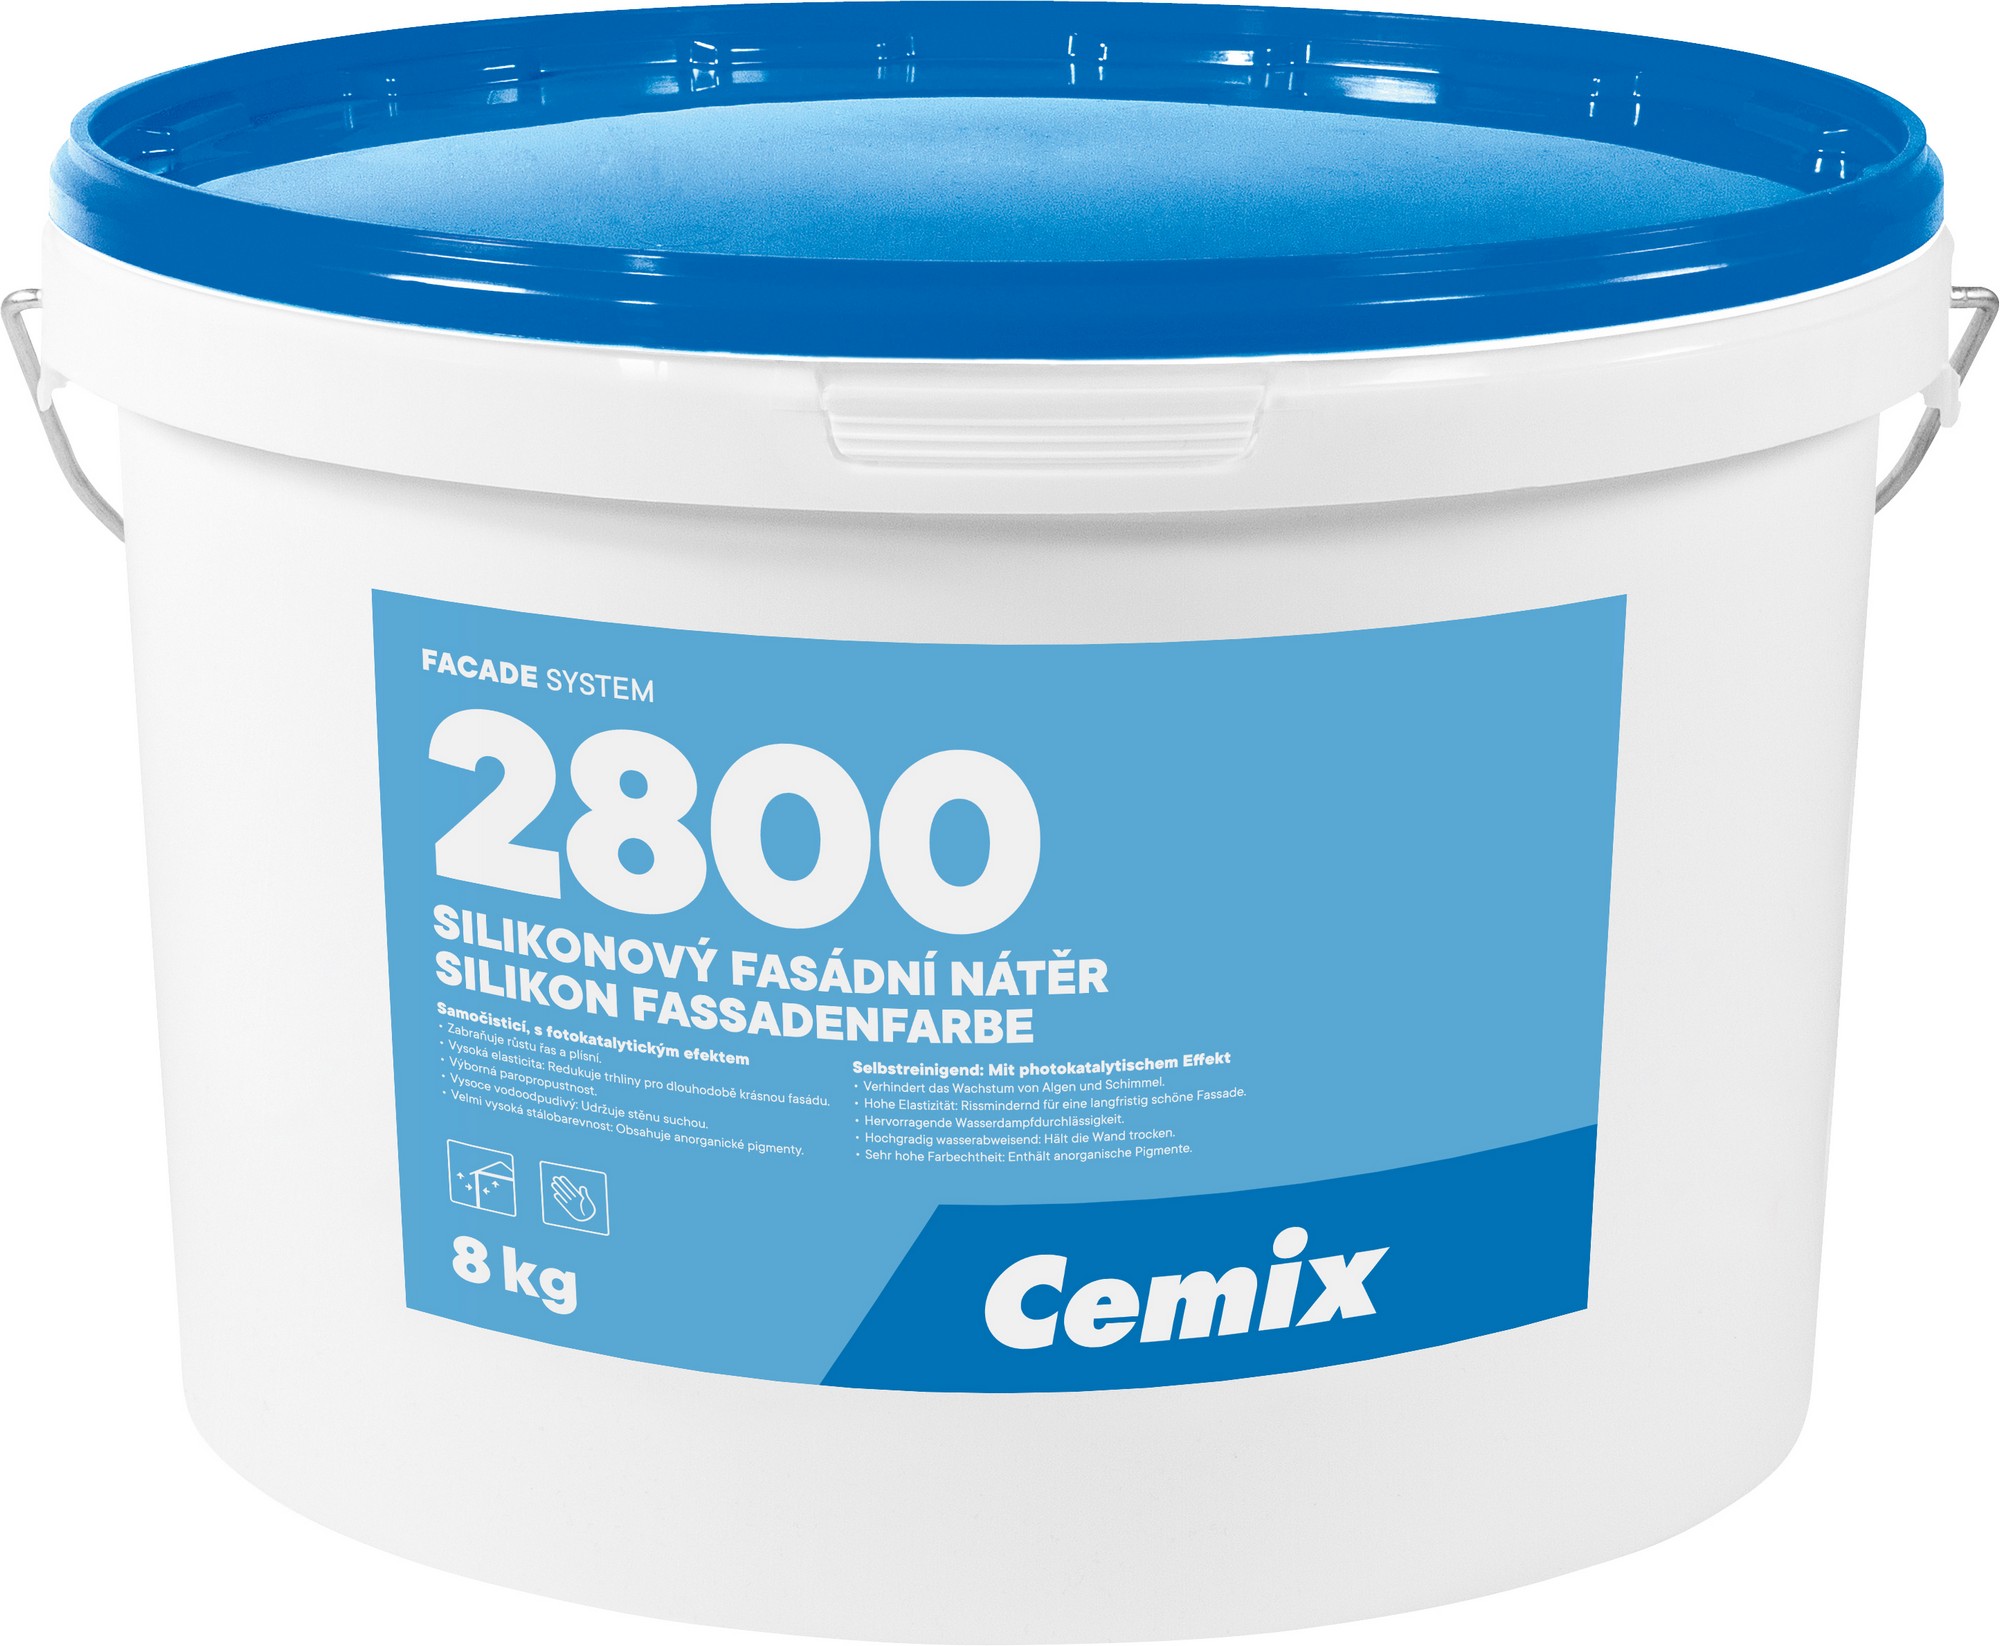 Nátěr fasádní silikonový Cemix 2800 bezpř., 8 kg